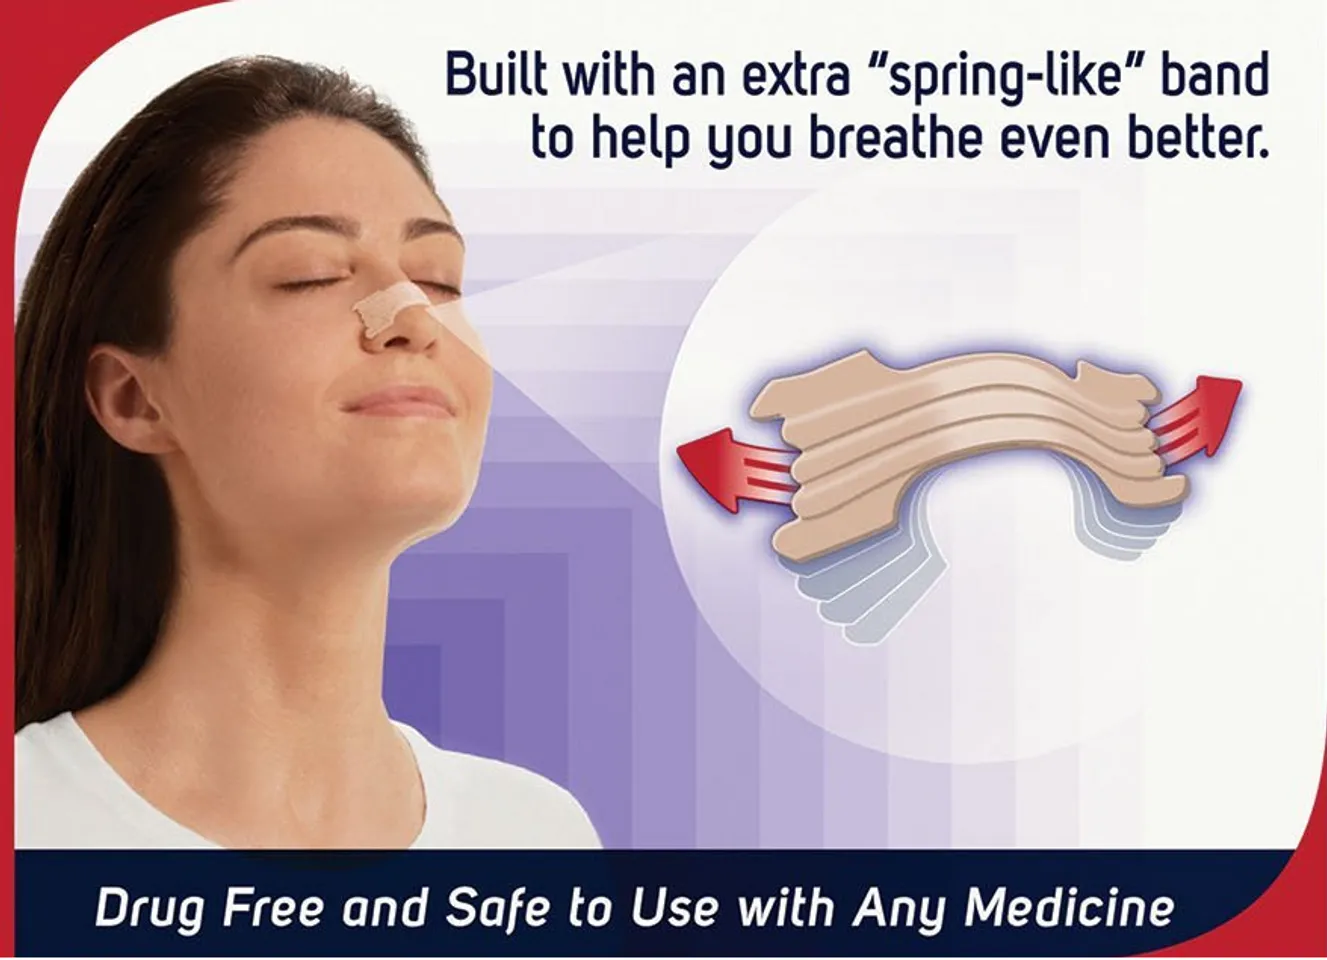 Miếng dán mũi Breathe Right không chứa dược phẩm, gồm 2 thanh cong nhẹ nhàng kéo mở hốc mũi 